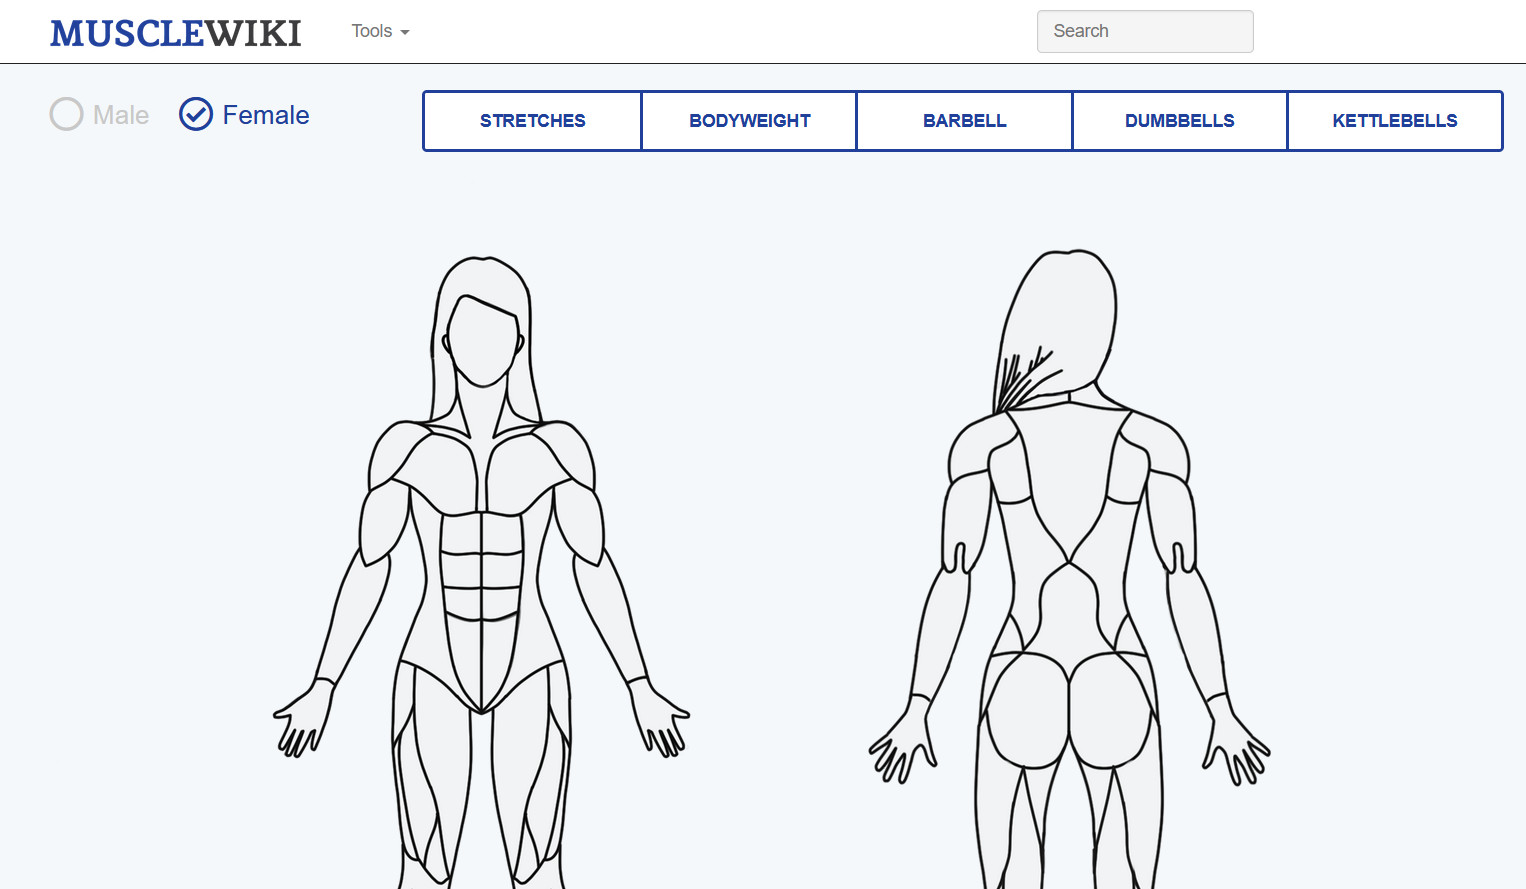 肌肉百科 musclewiki.com，健身爱好者的百科知识库